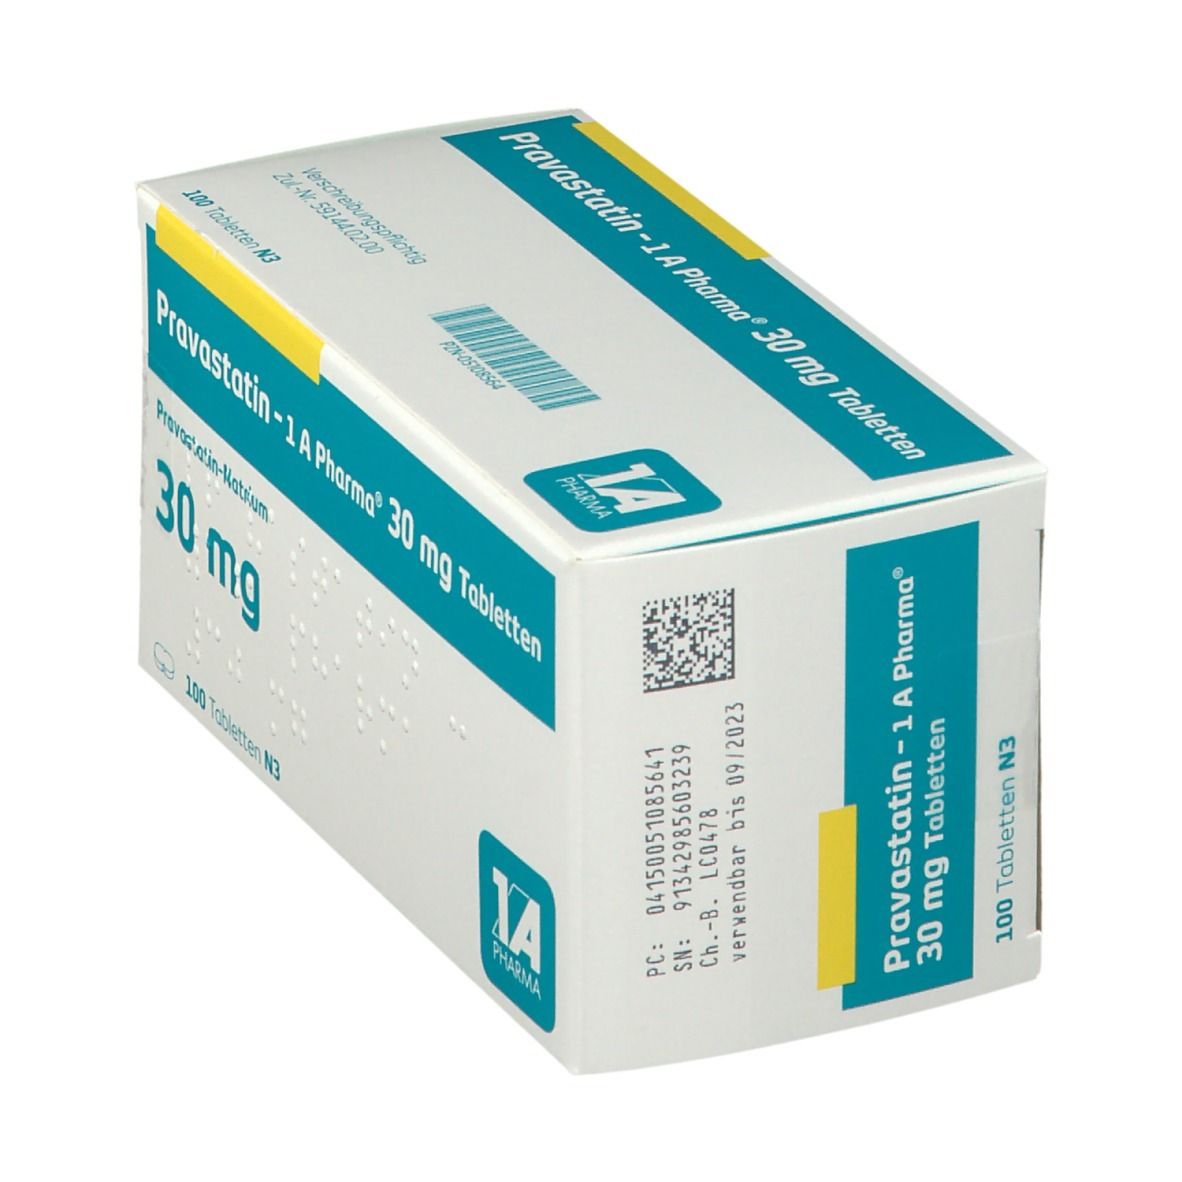 Pravastatin 1A Pharma® 30Mg